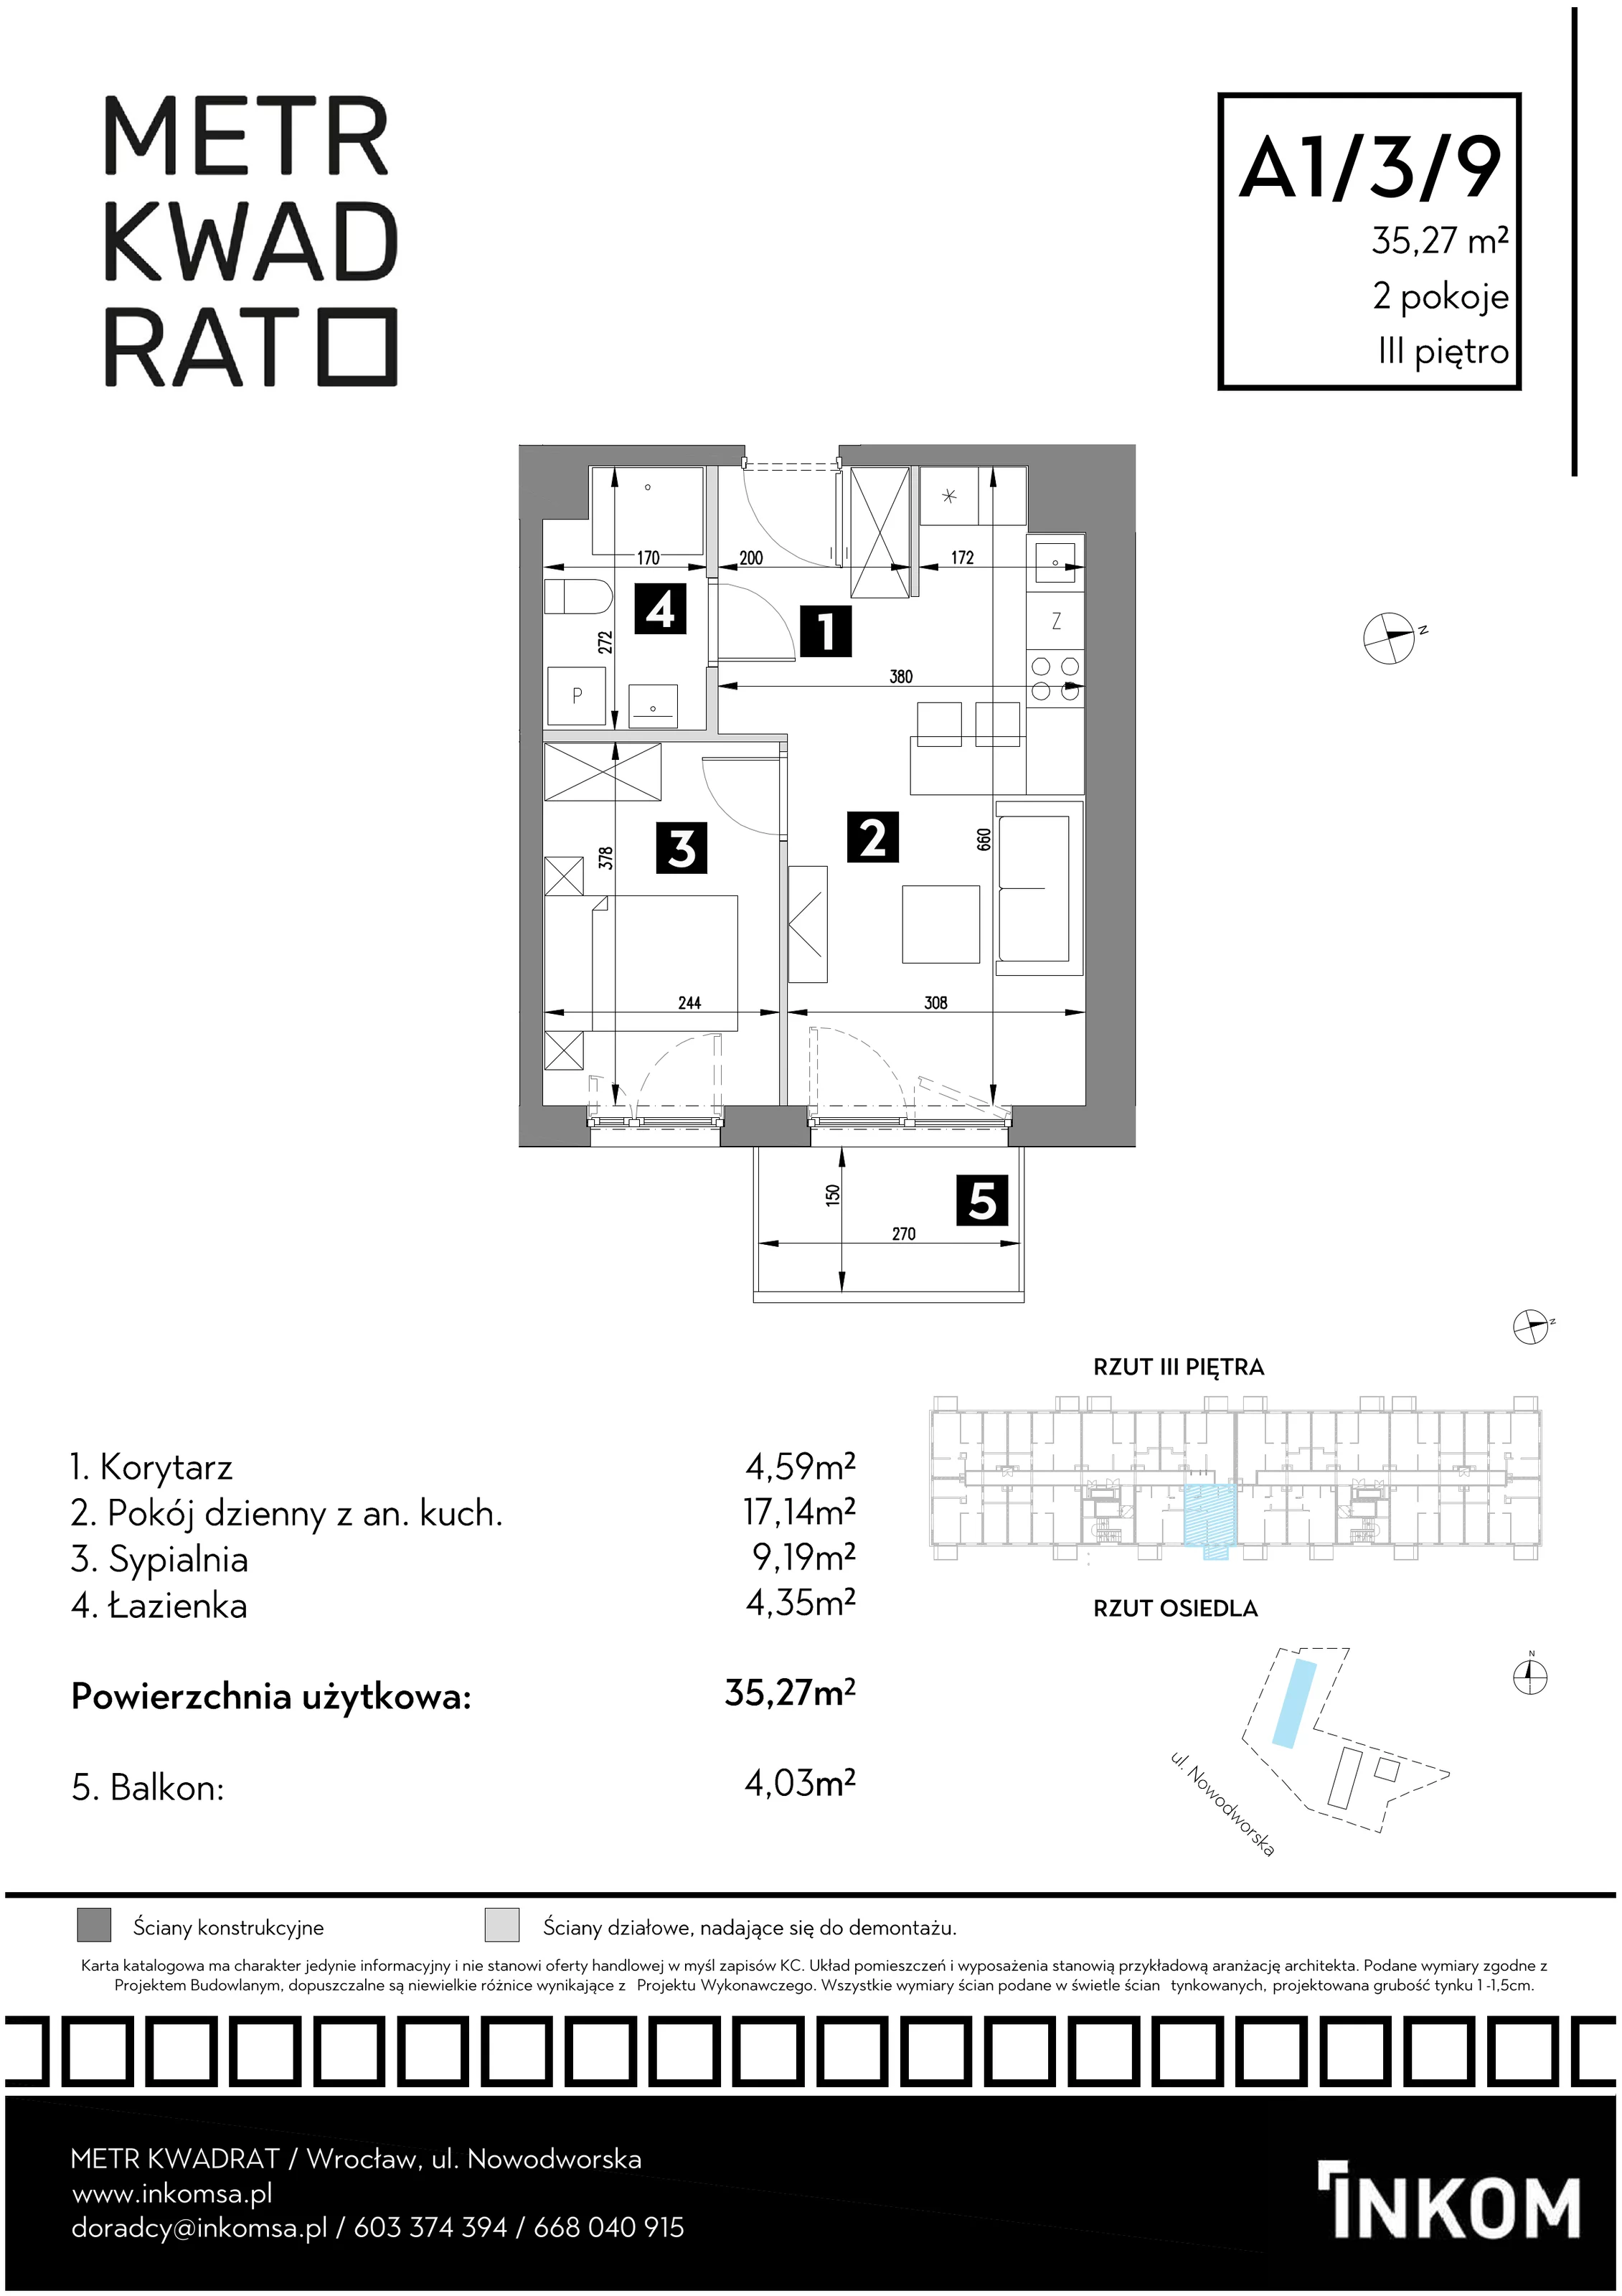 Mieszkanie 35,27 m², piętro 3, oferta nr A1/3/9, Metr Kwadrat, Wrocław, Nowy Dwór, ul. Nowodworska 17B